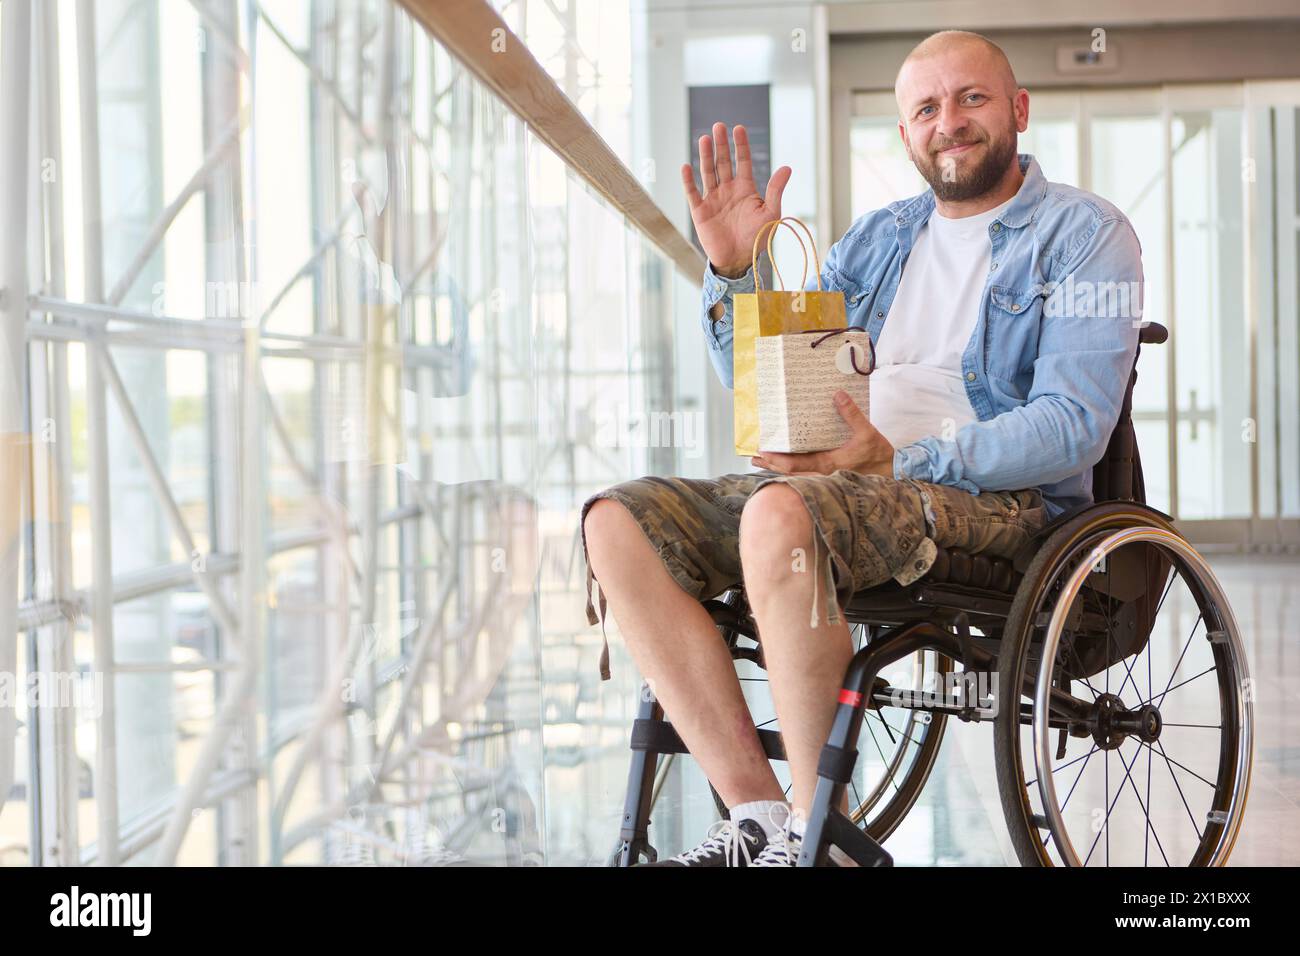 Persona alegre que usa una silla de ruedas ondea mientras sostiene un regalo, ejemplificando inclusividad y positividad en un entorno interior moderno. Foto de stock